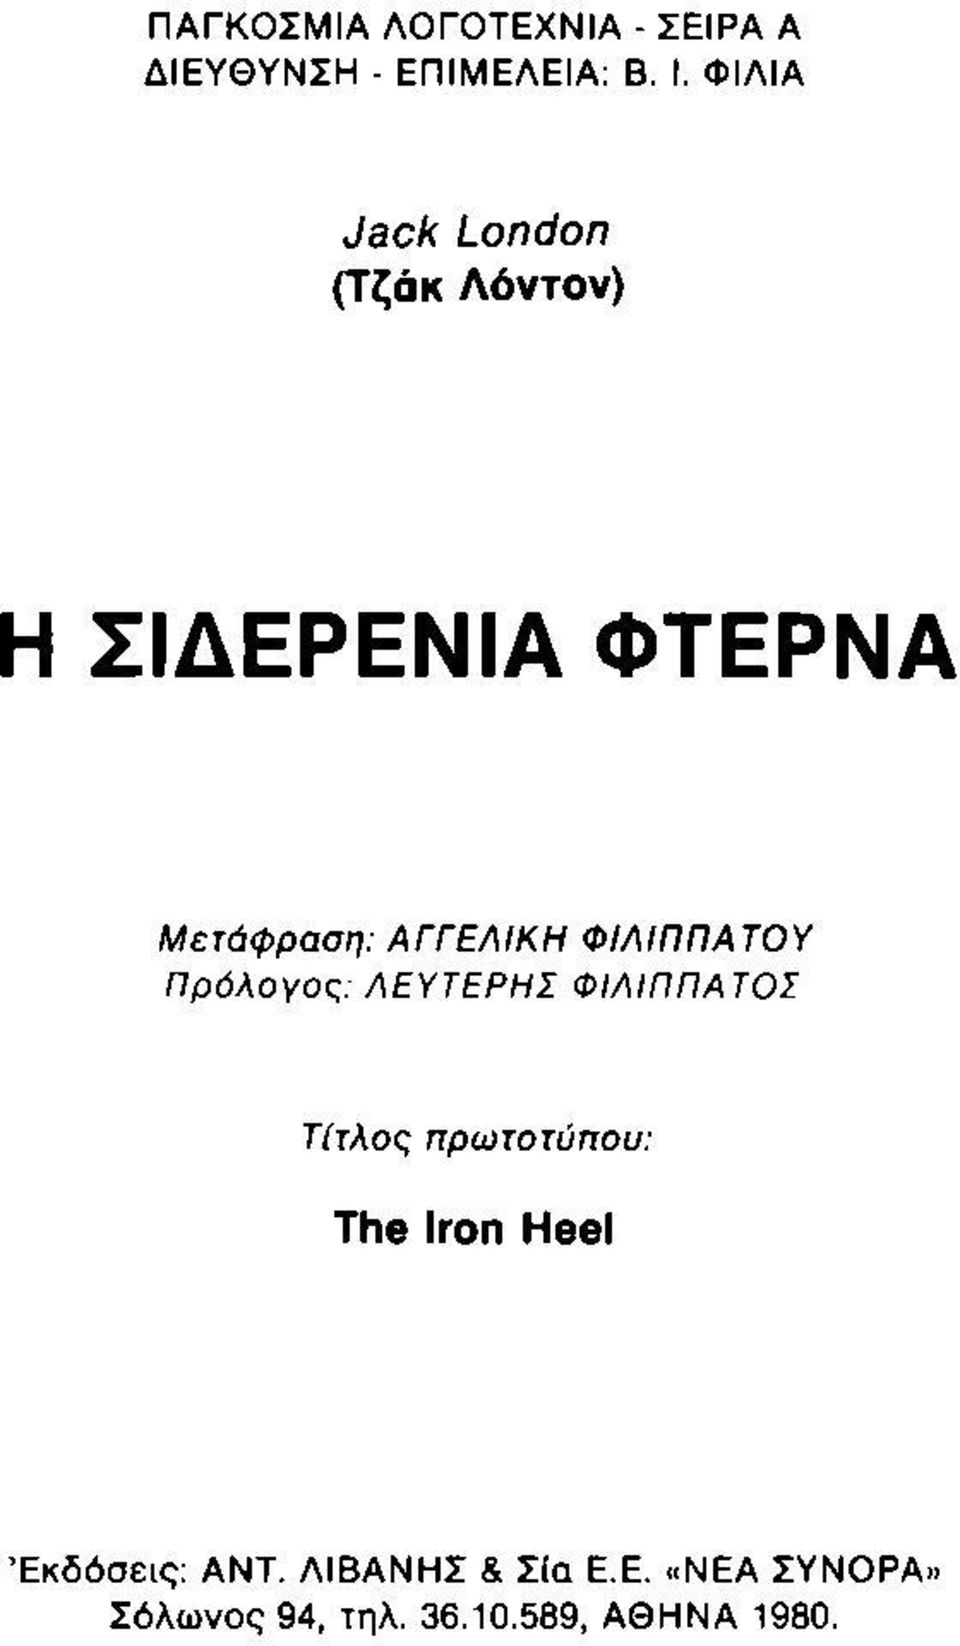 ΦΙΛΙΠΠΑΤΟΥ Πρόλογος: ΛΕΥΤΕΡΗΣ ΦΙΛΙΠΠΑΤΟΣ Τίτλος πρωτοτύπου: The Iron